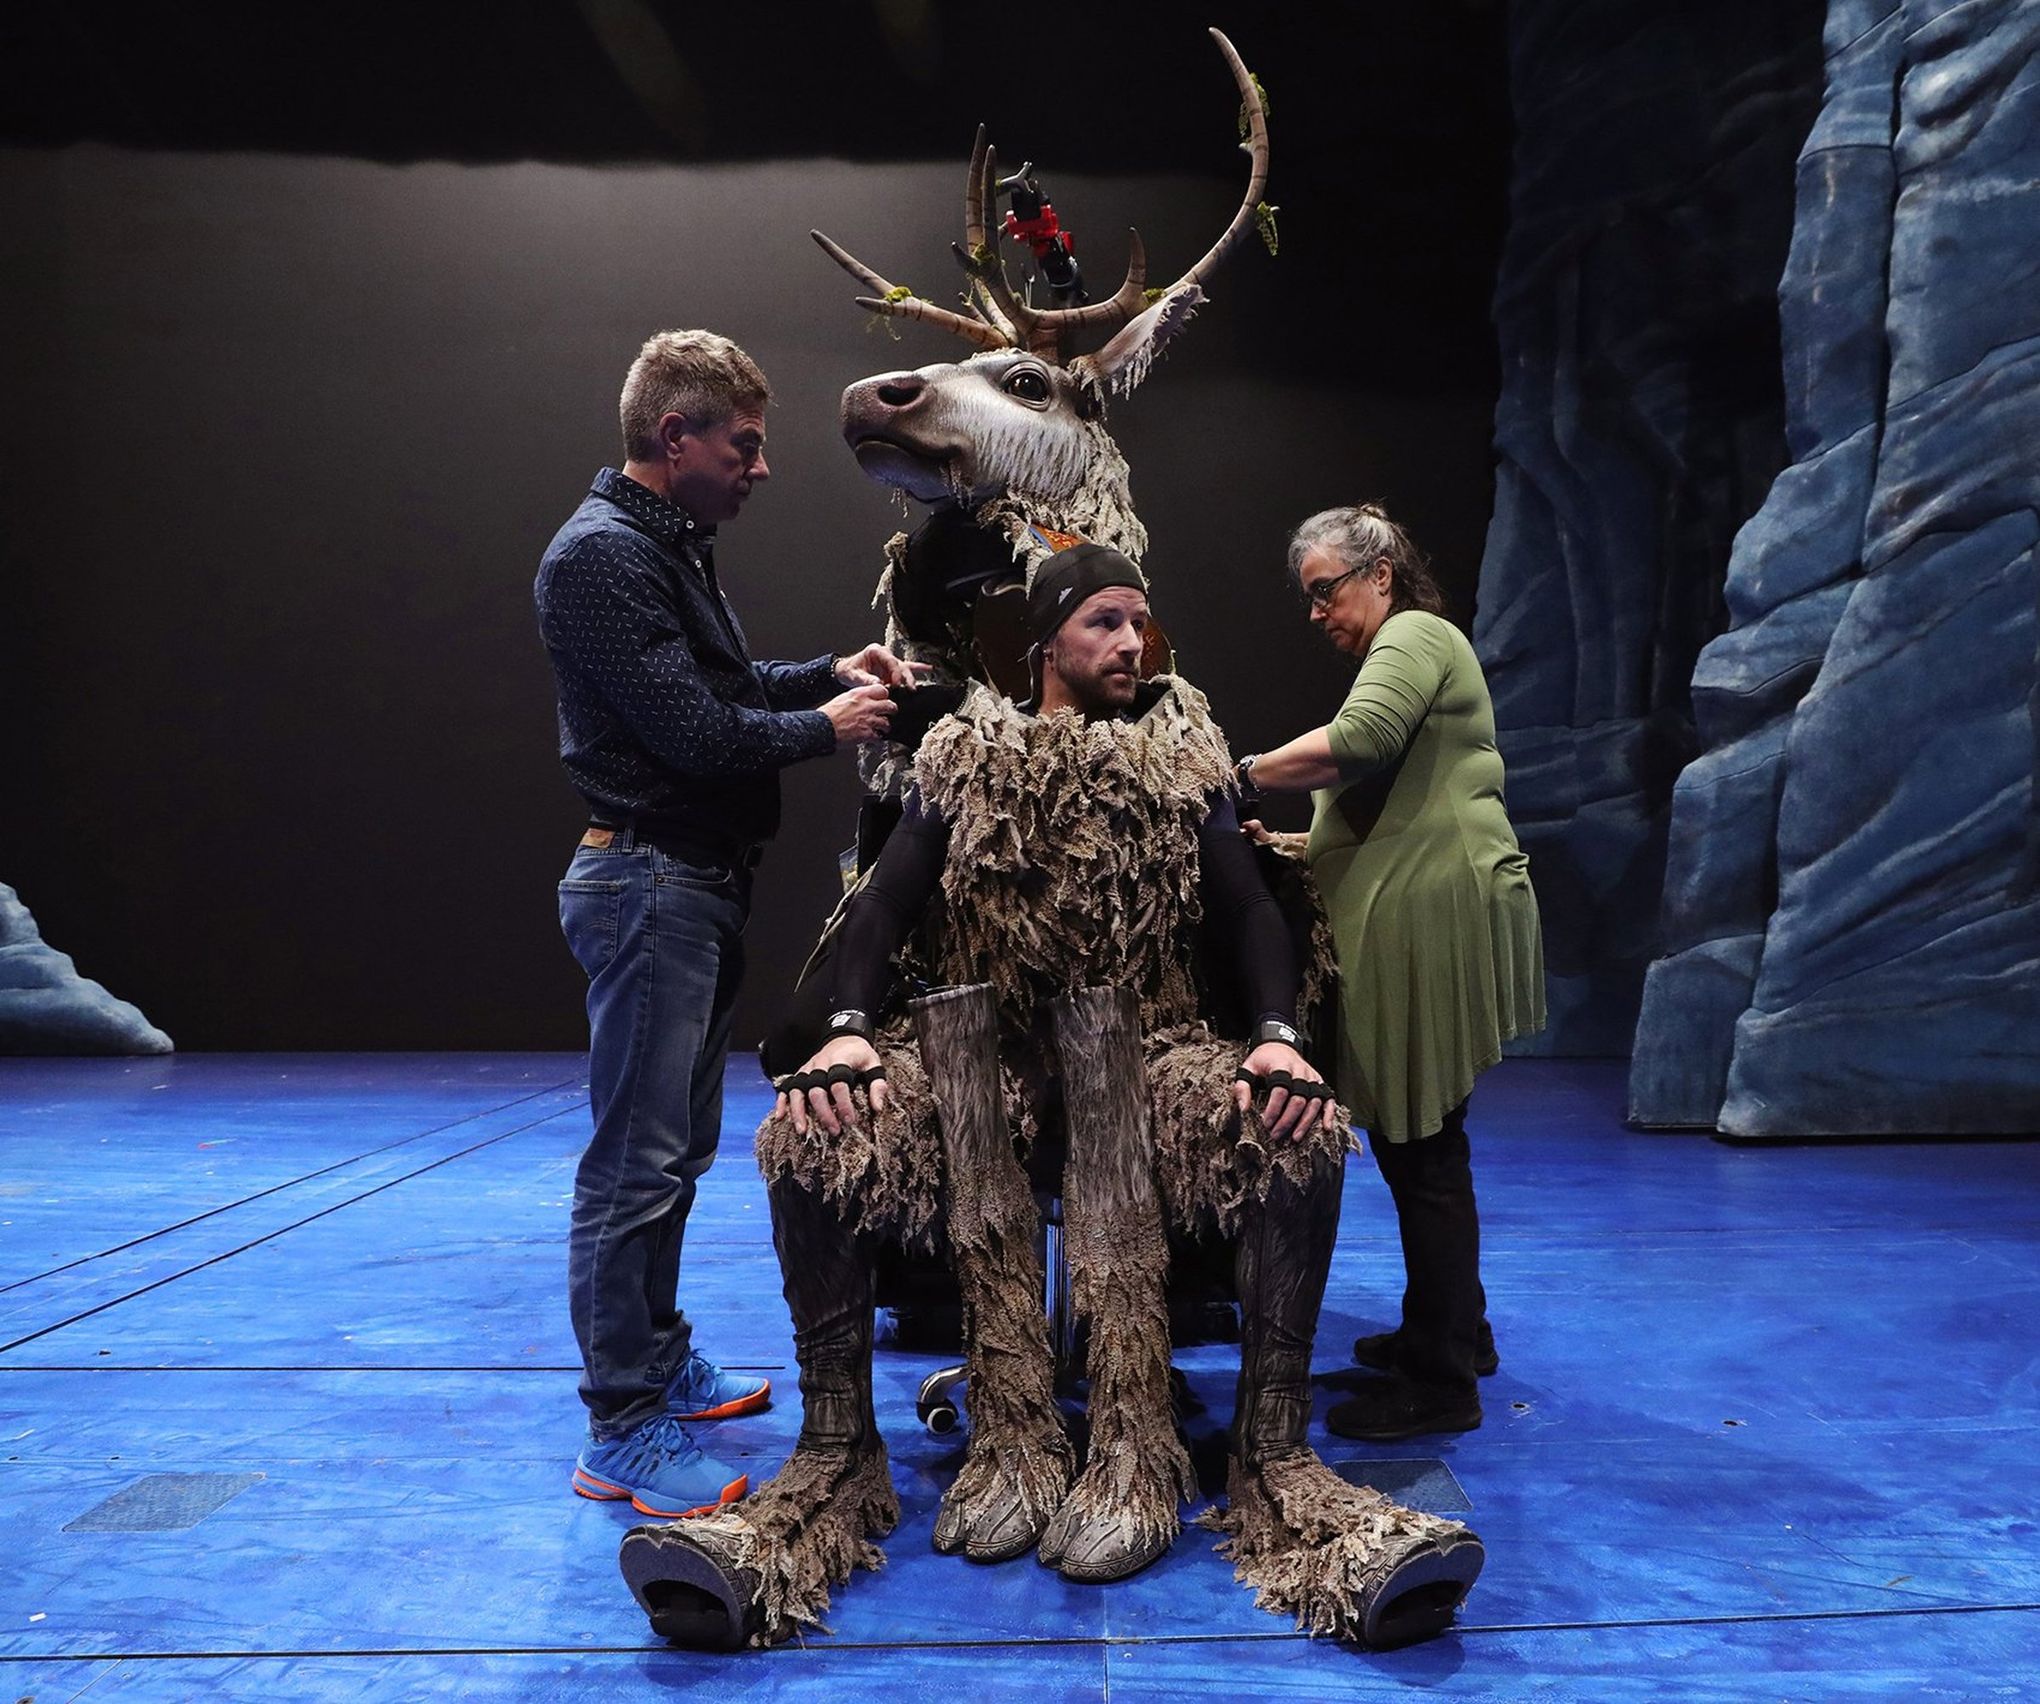 Frozen - Sven reindeer in the movie 